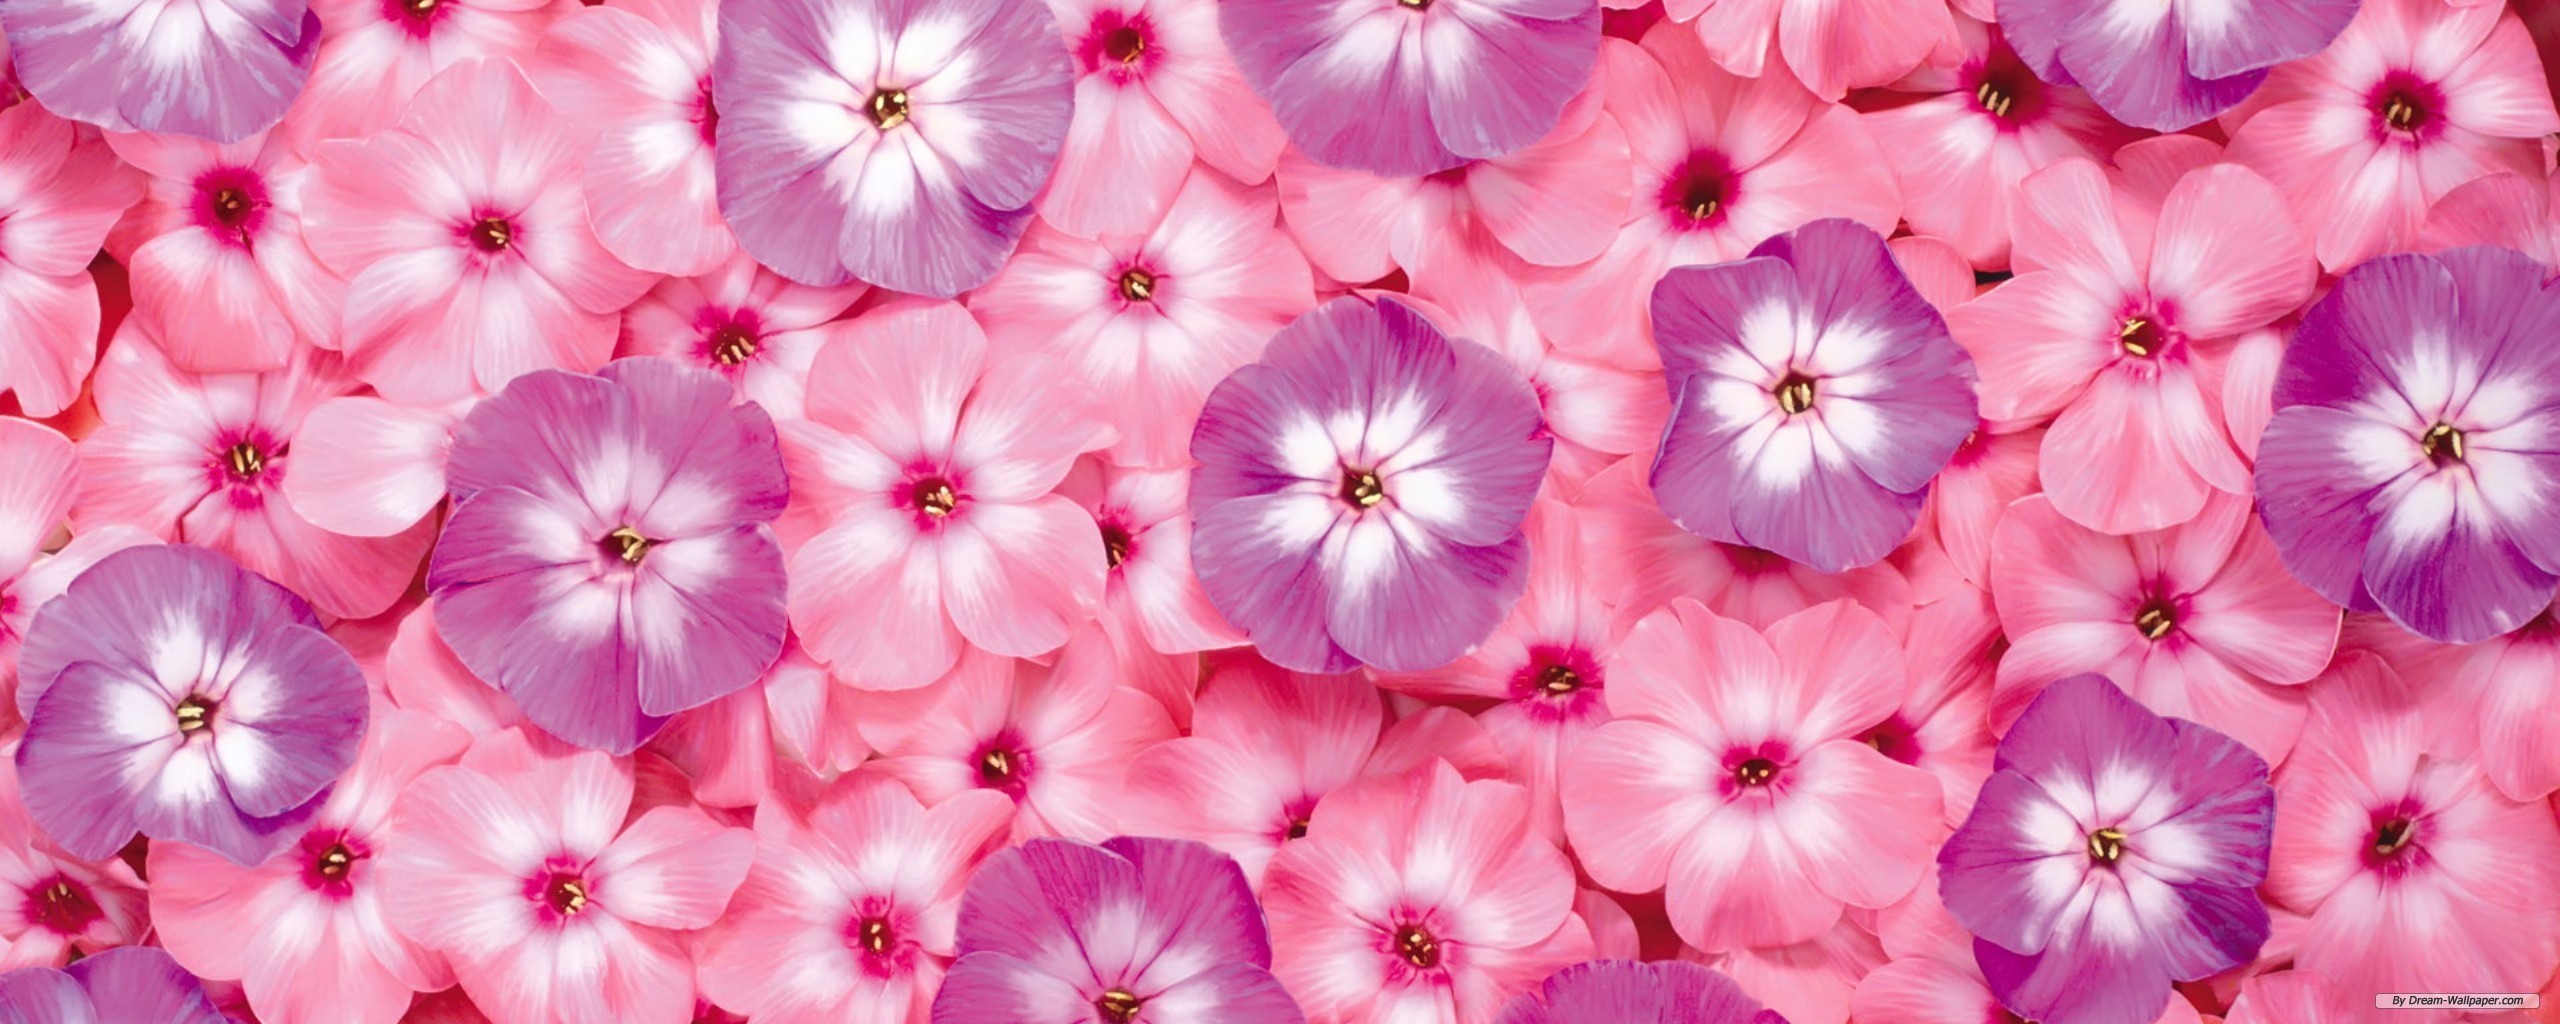 Tumblr Flower Backgrounds wallpaper 1920x1200 23676